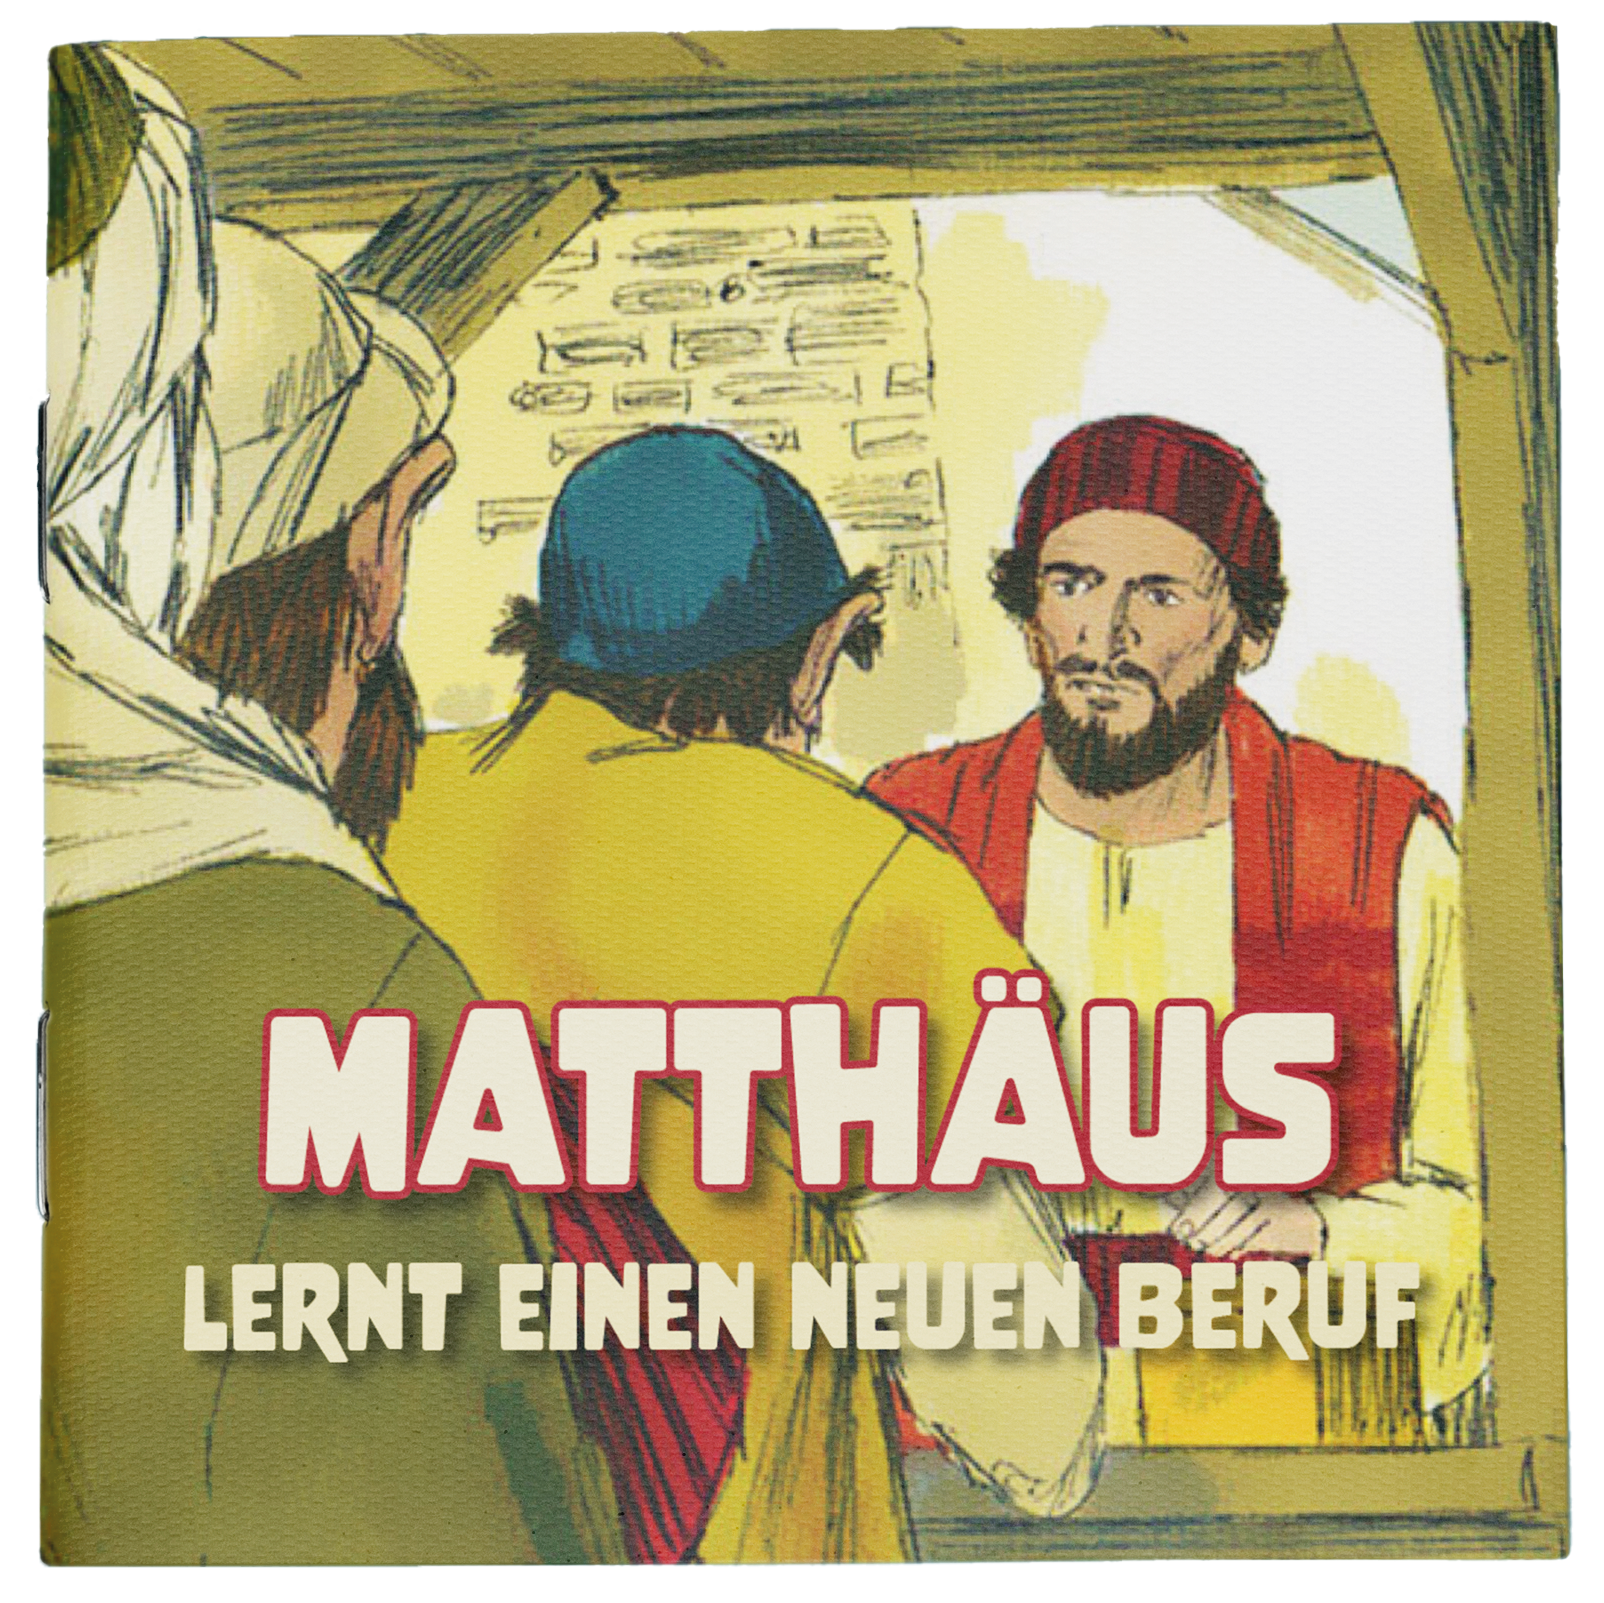 Matthäus lernt einen neuen Beruf